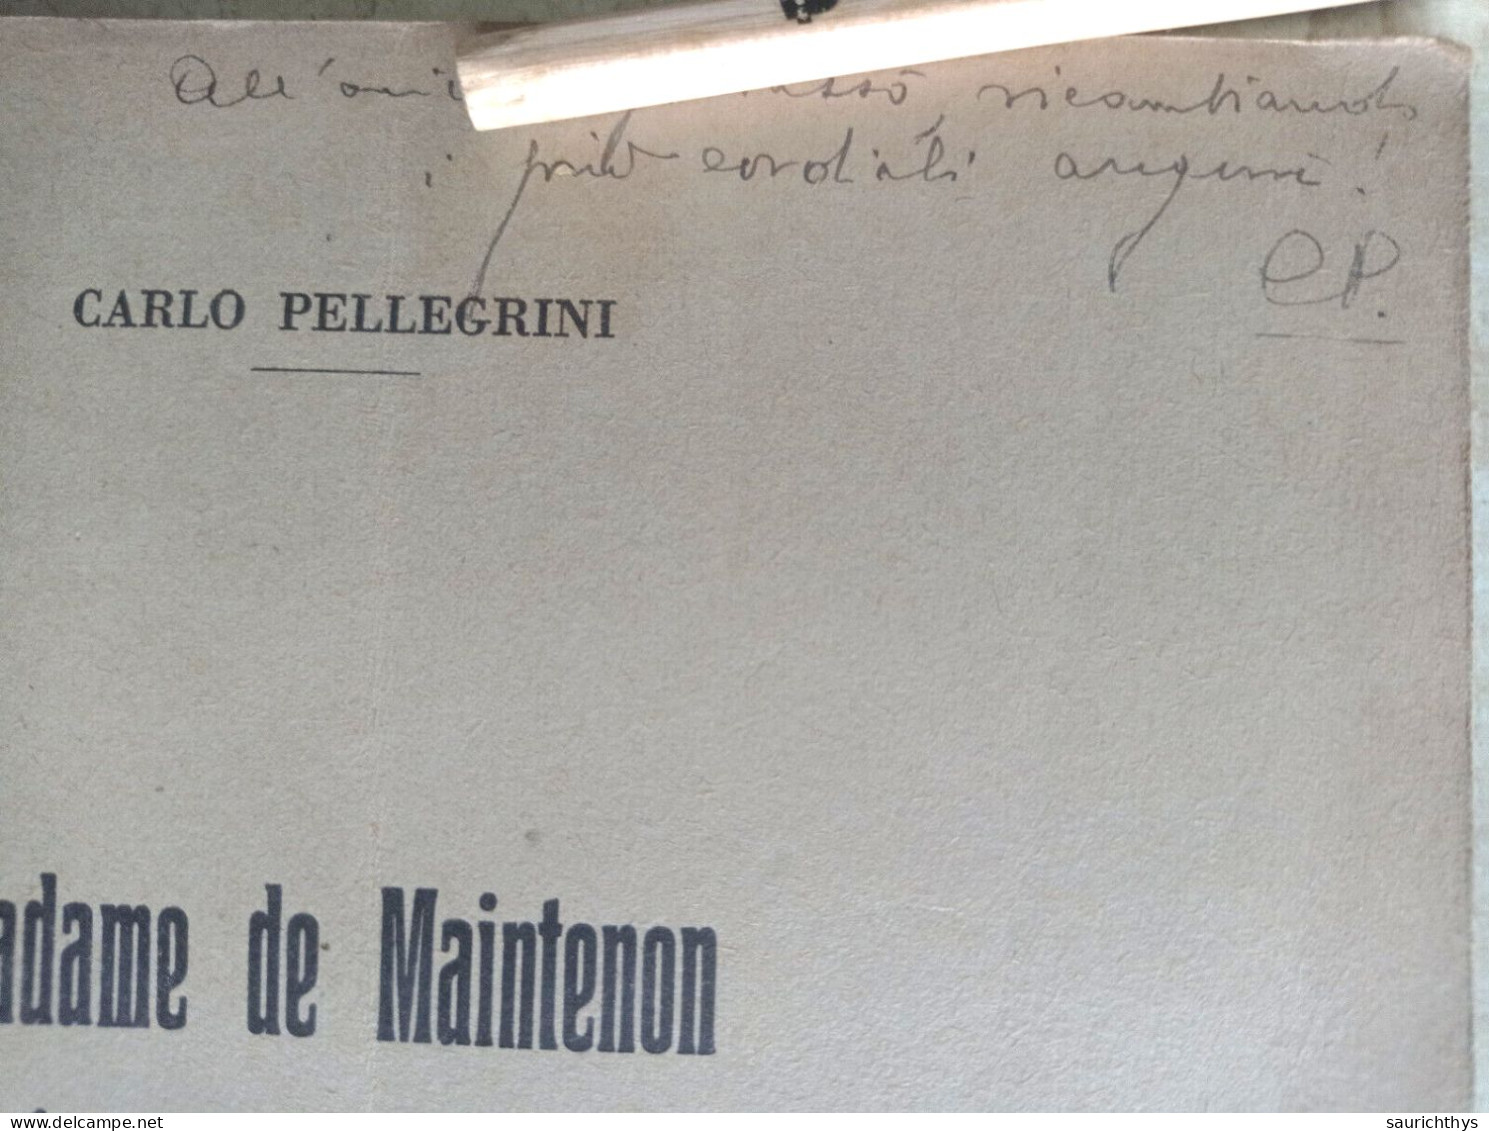 Madame De Maintenon Ed Uno Scrittore Italiano Del Seicento Autografo Carlo Pellegrini Da Viareggio - Geschichte, Biographie, Philosophie